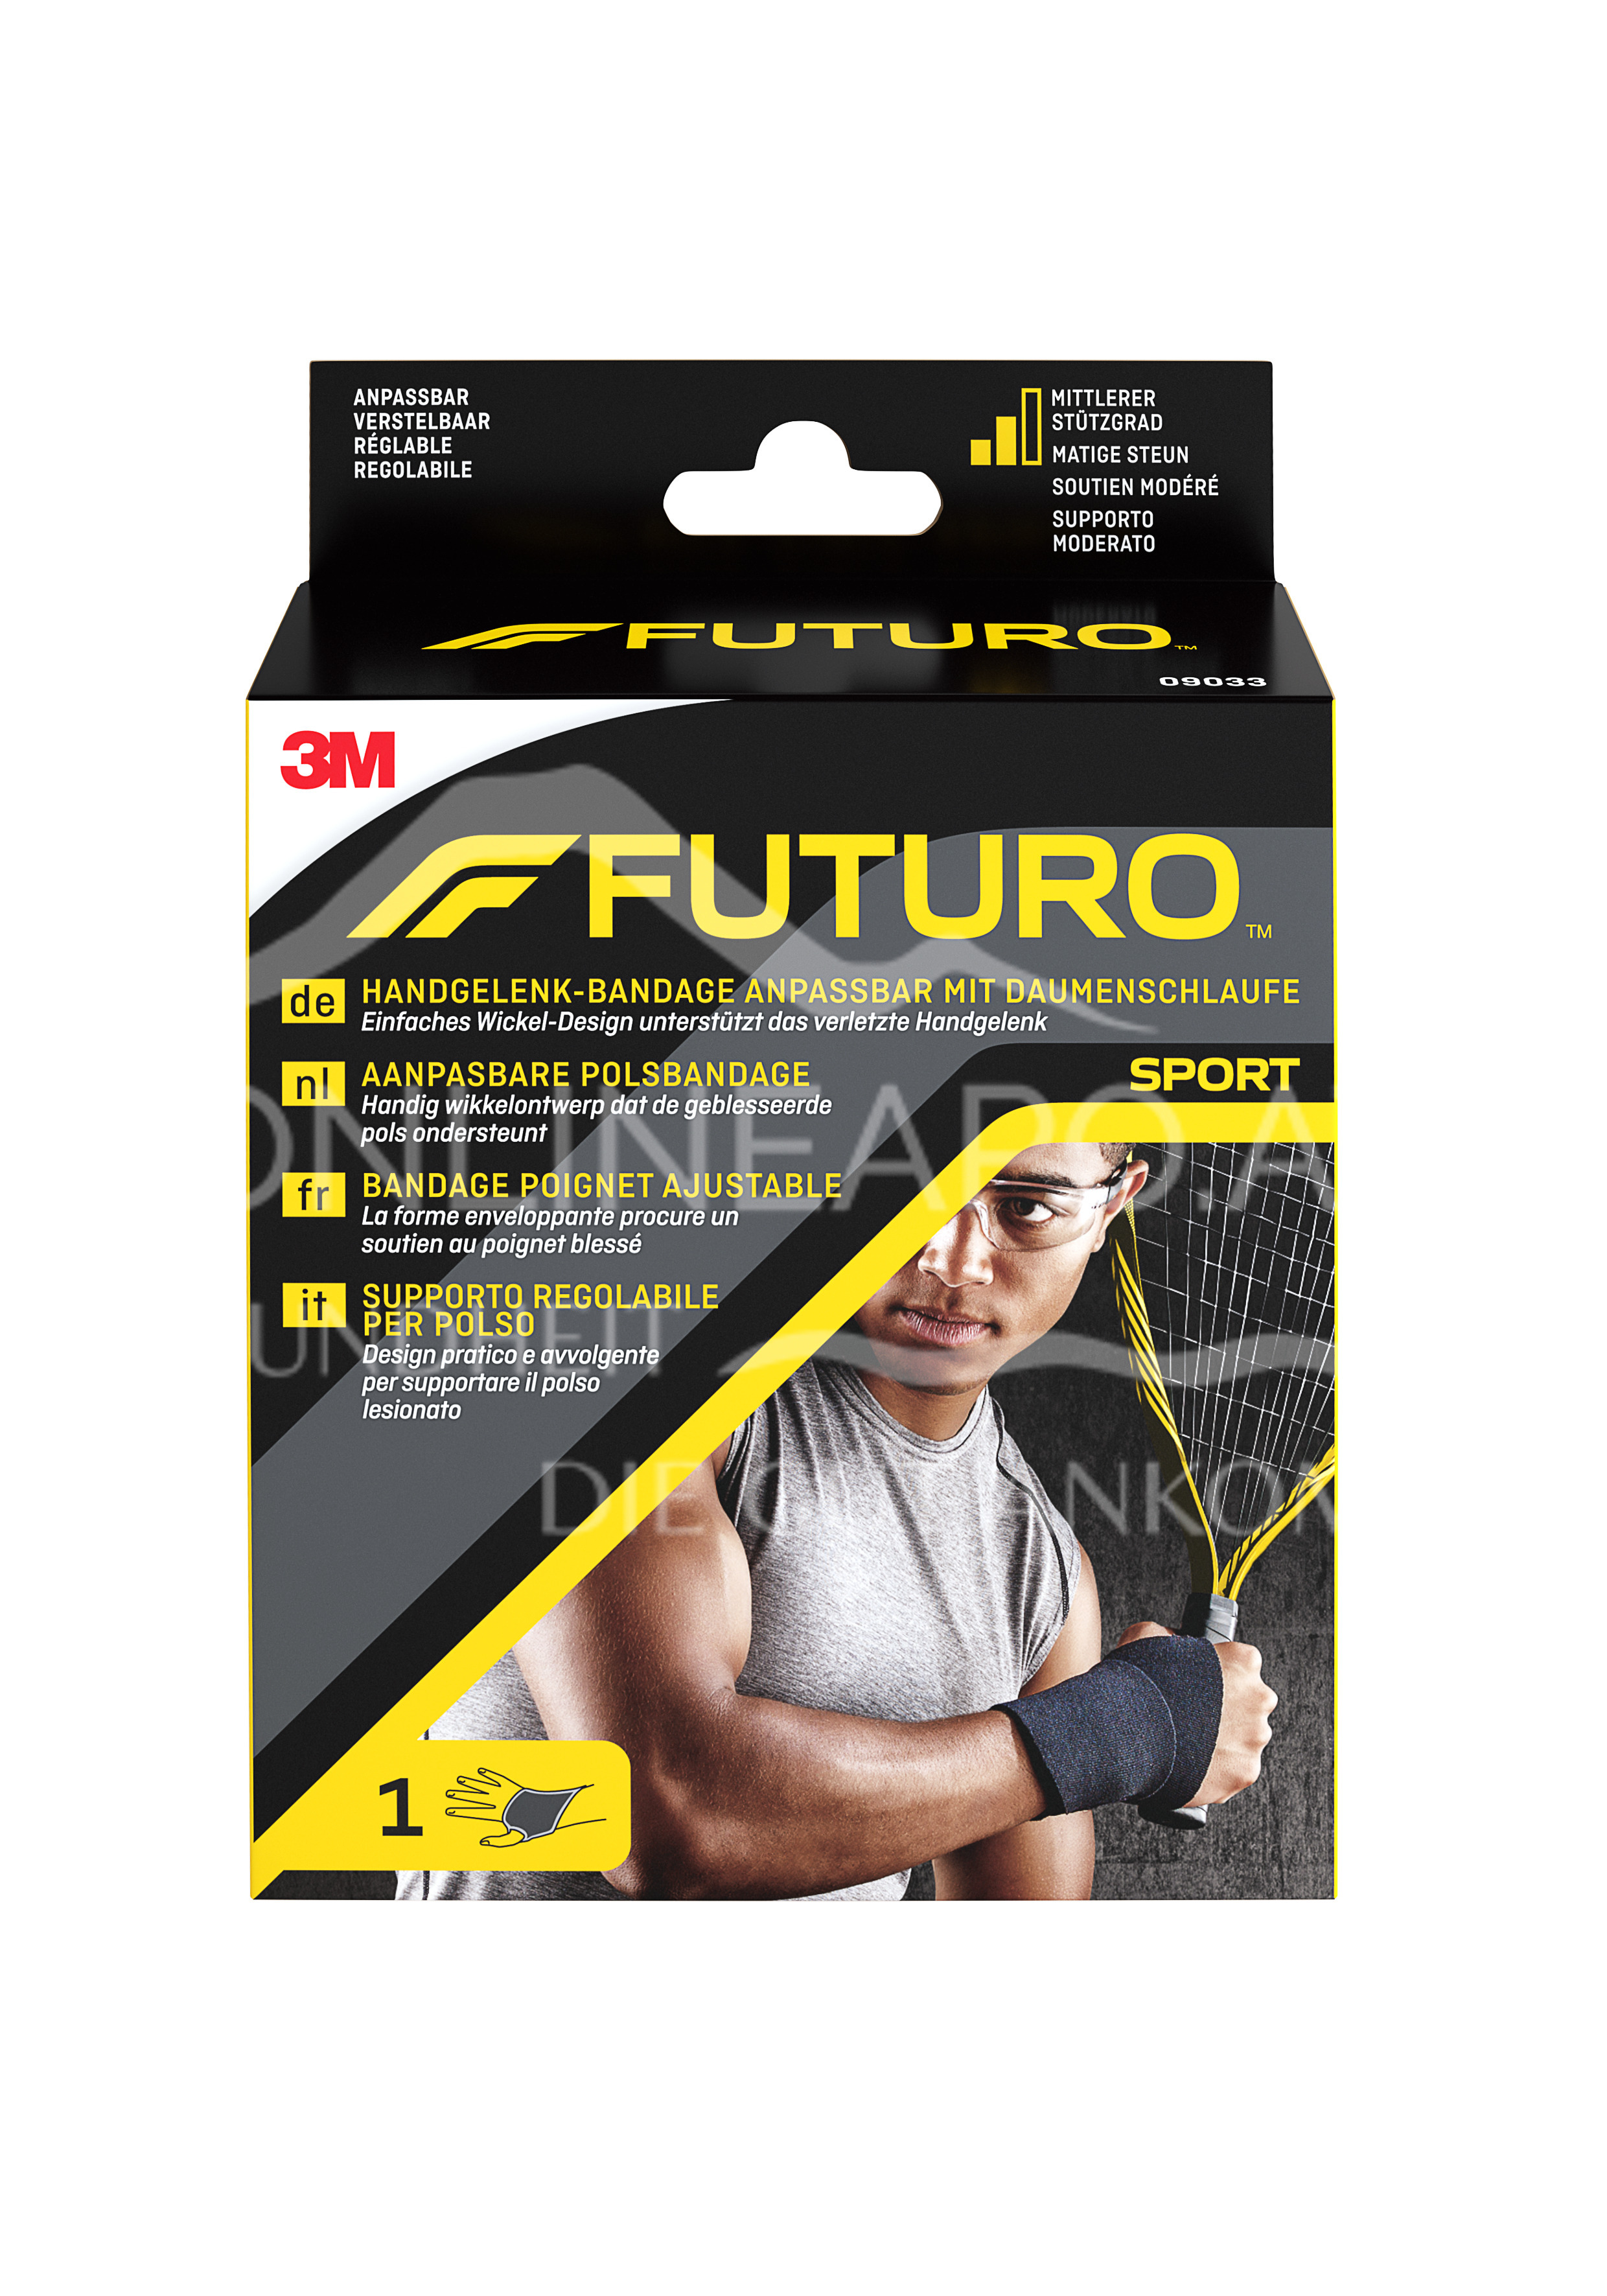 3M FUTURO™ Handgelenk-Bandage anpassbar mit Daumenschlaufe 09033, Verstellbar SPORT (11.4 - 24.1 cm)